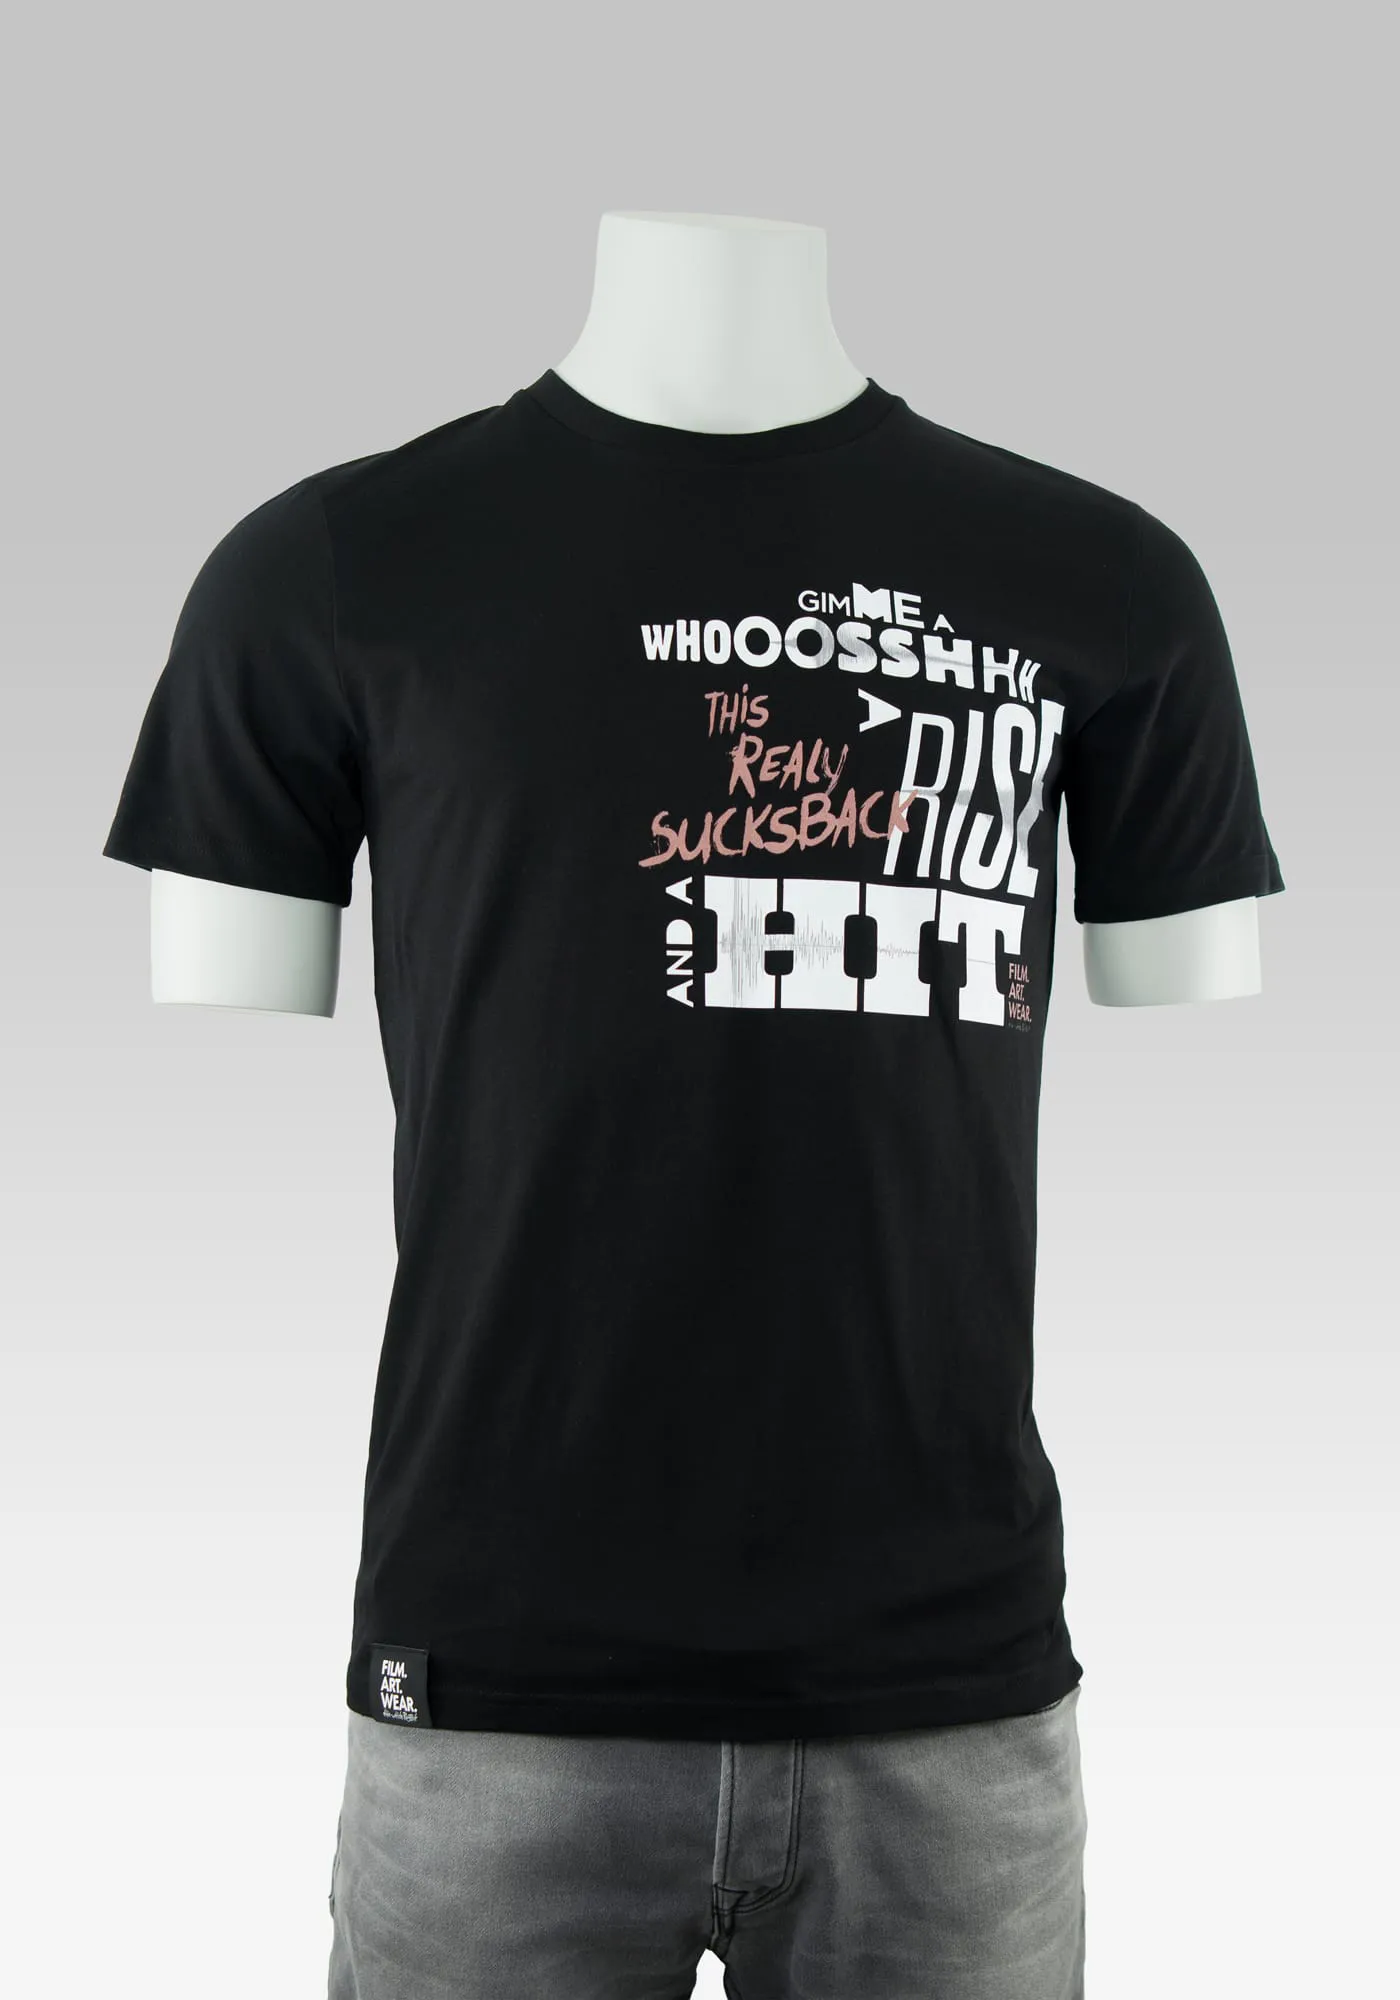 Nerd-shirts film T-Shirt in schwarz mit Typografie Print